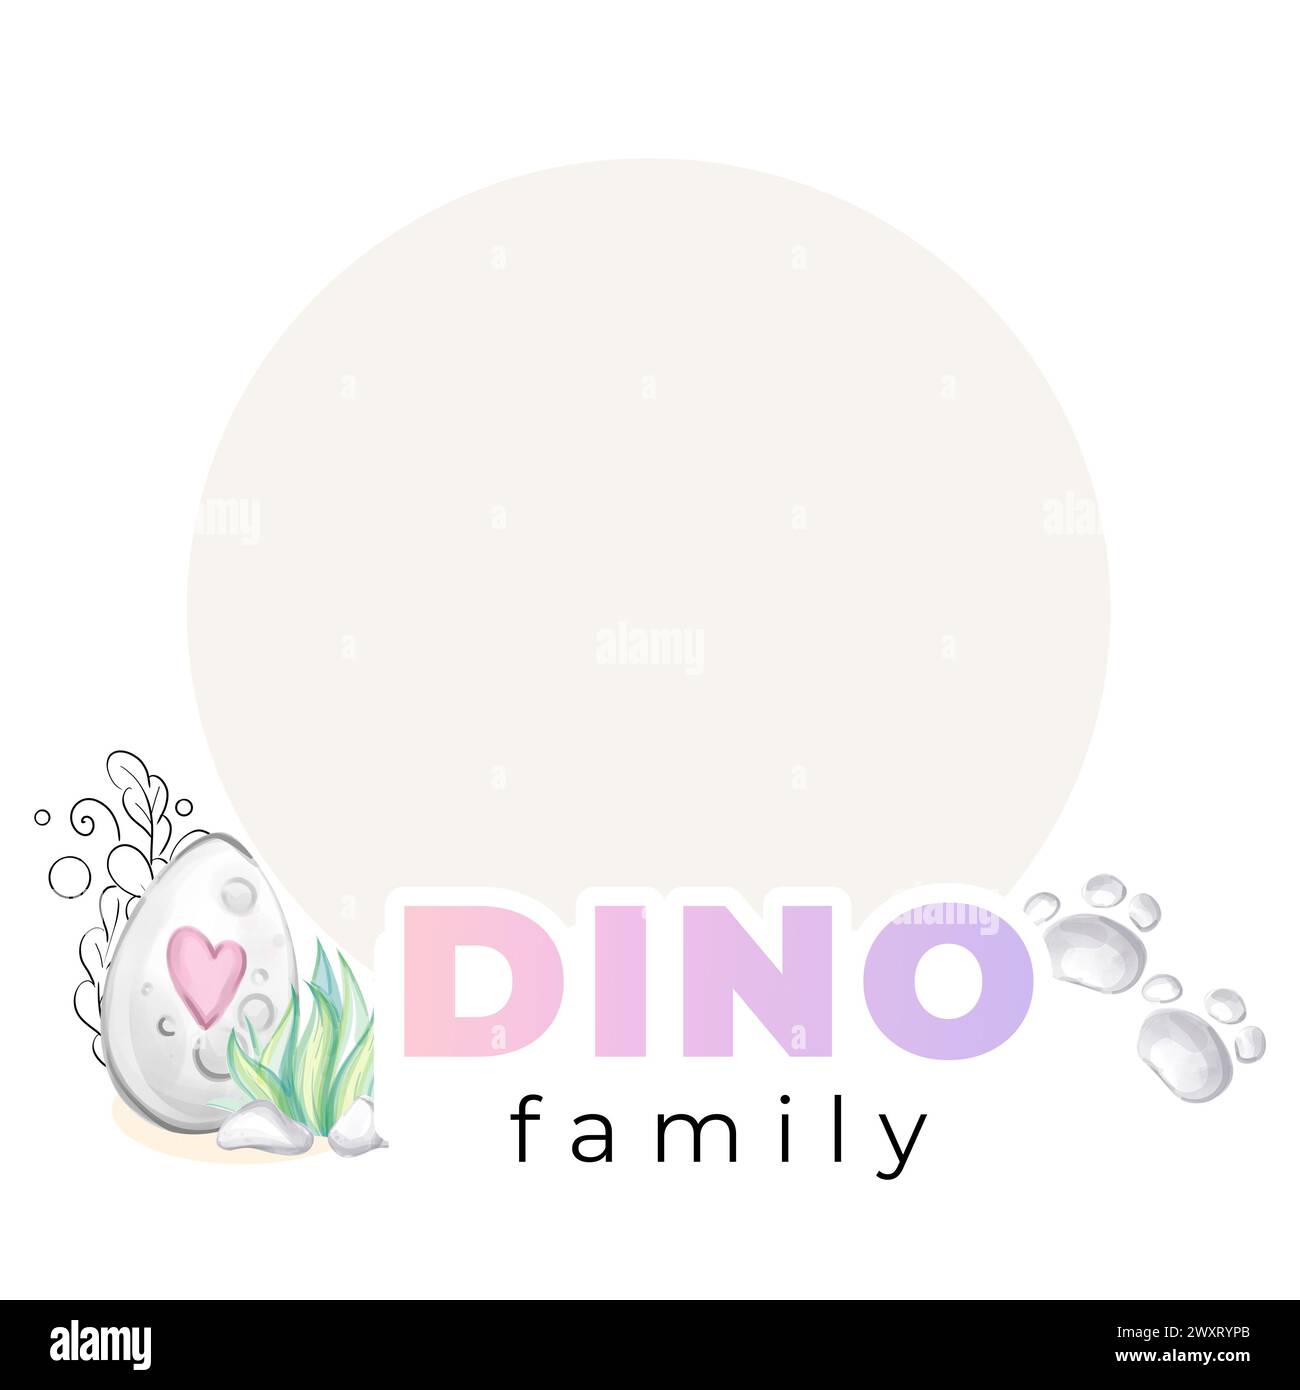 Modèle cadre aquarelle mignon bébé dinosaure Dino famille. Conception pour pépinière Banque D'Images